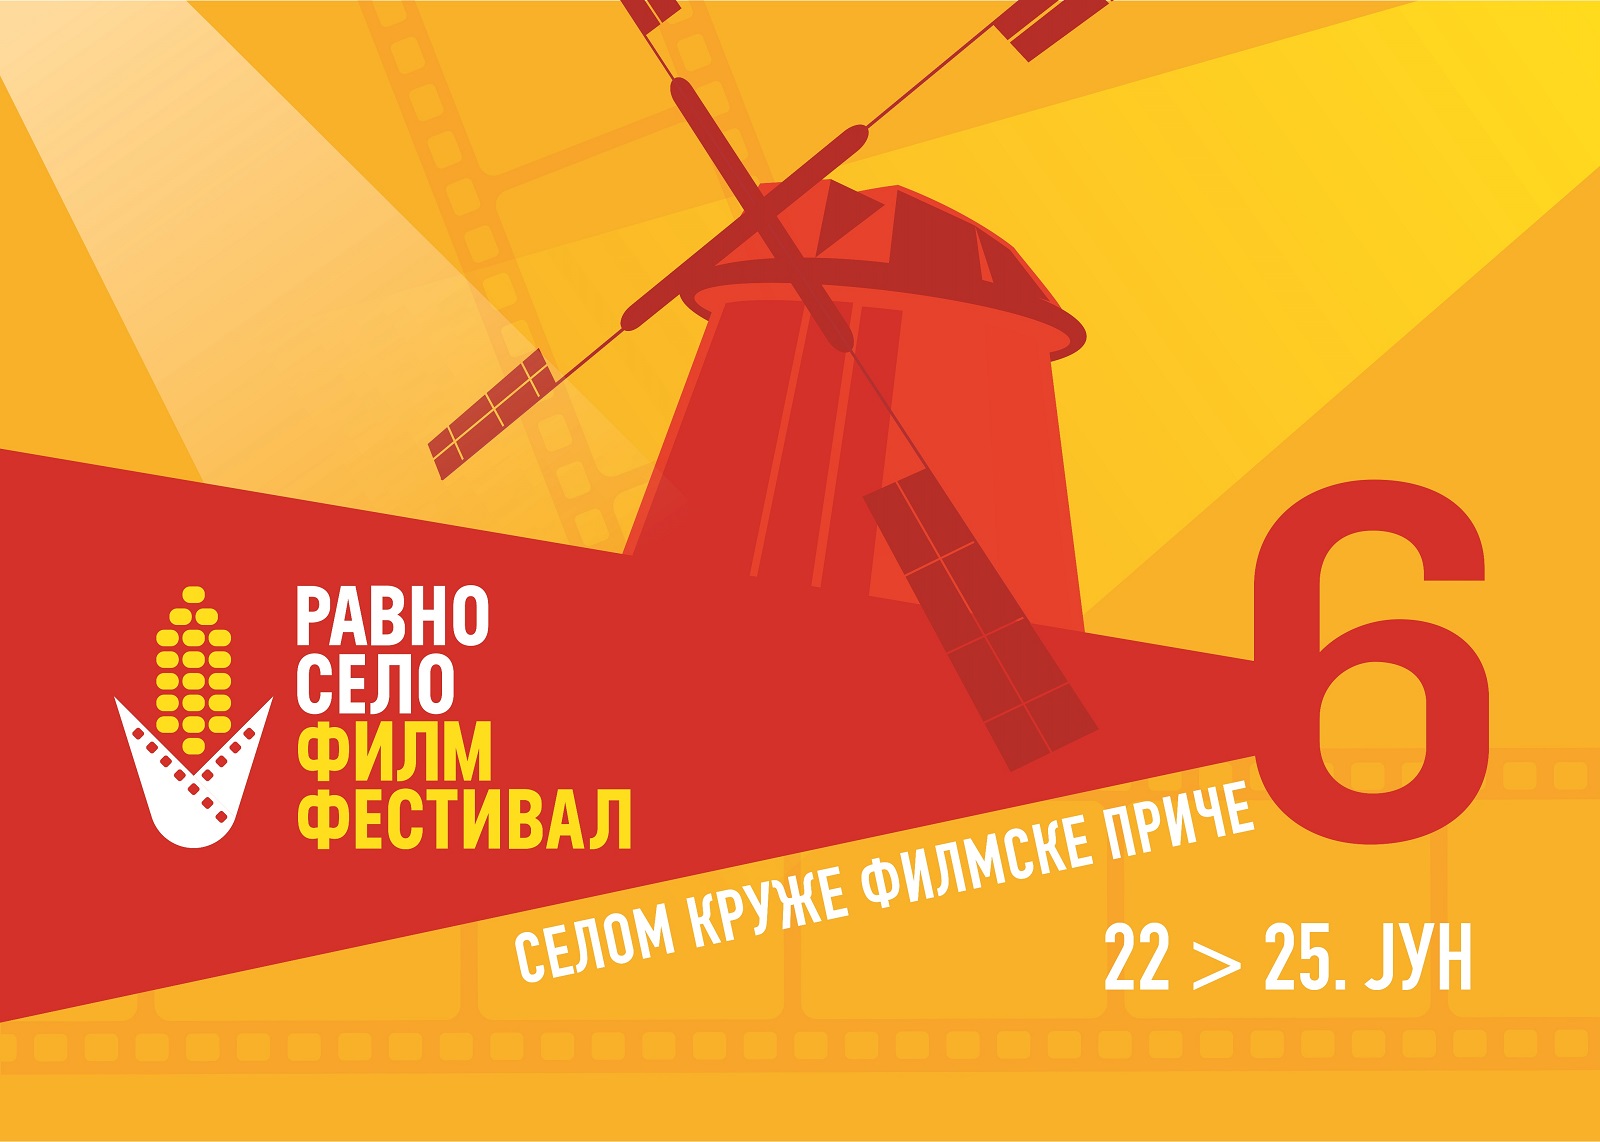 Šesti Ravno Selo Film Festival od 22. do 25. juna